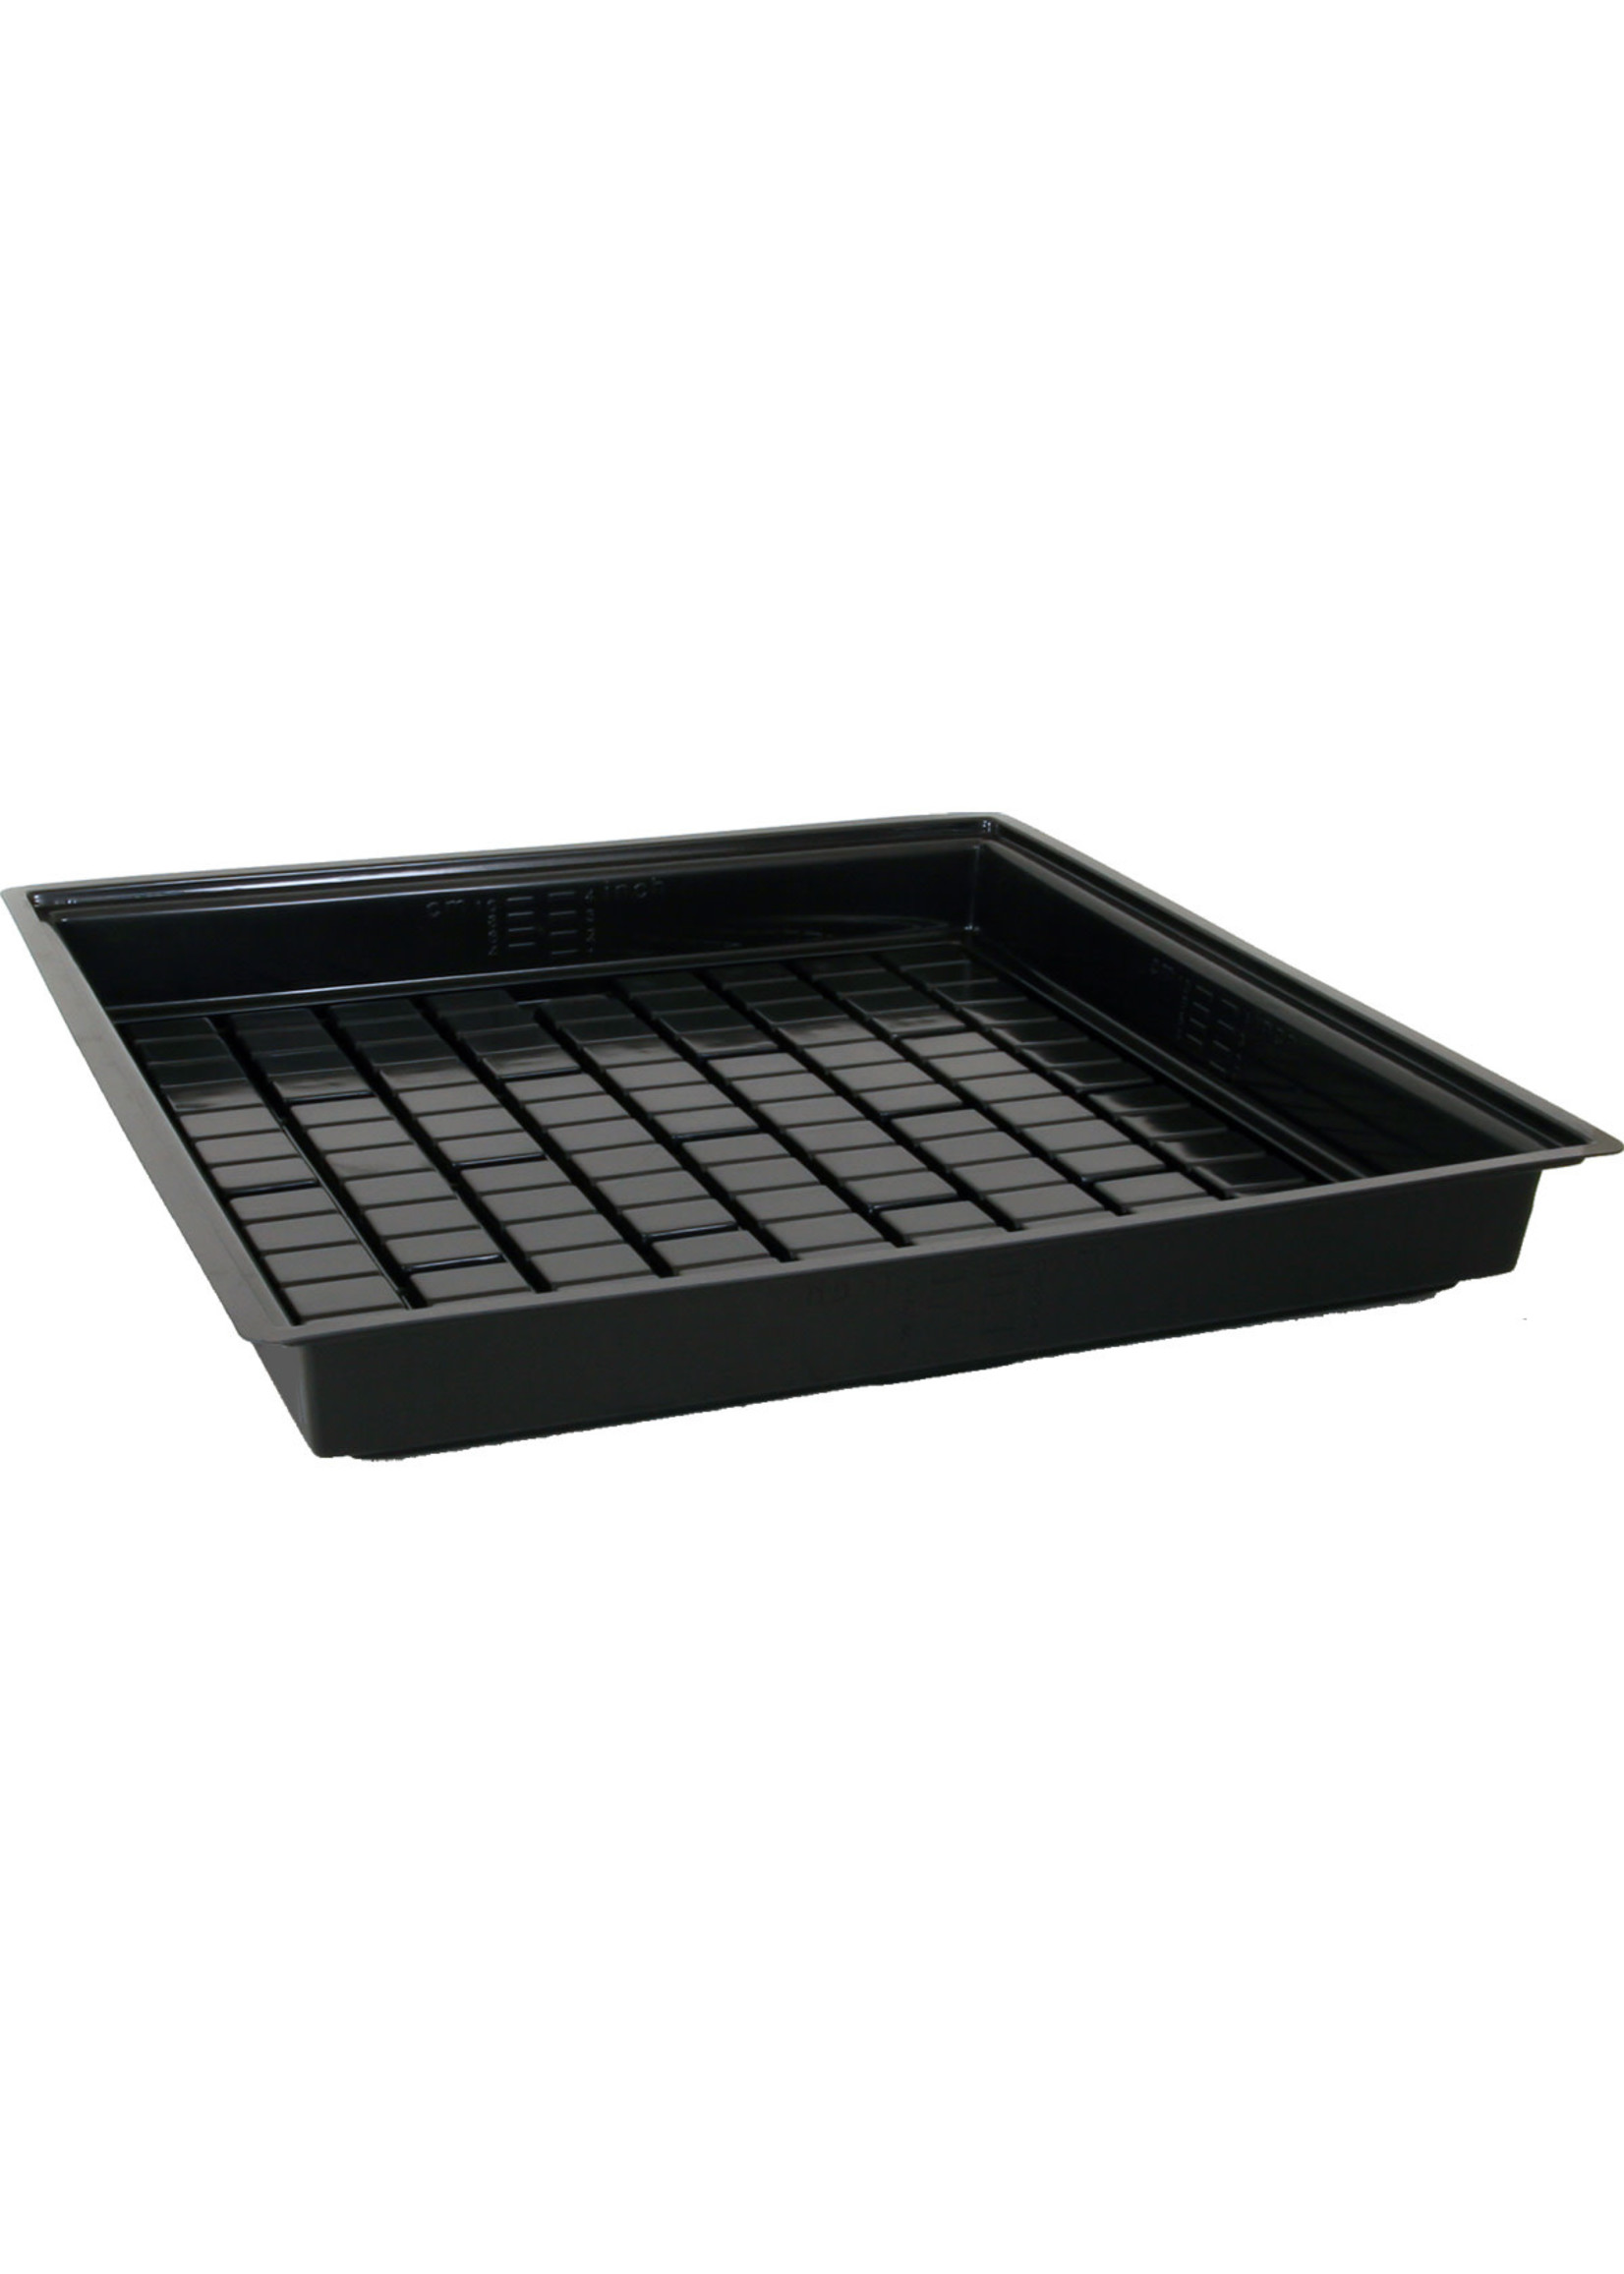 Active Aqua Active Aqua - Flood Table / Tray Black, 4' x 4’